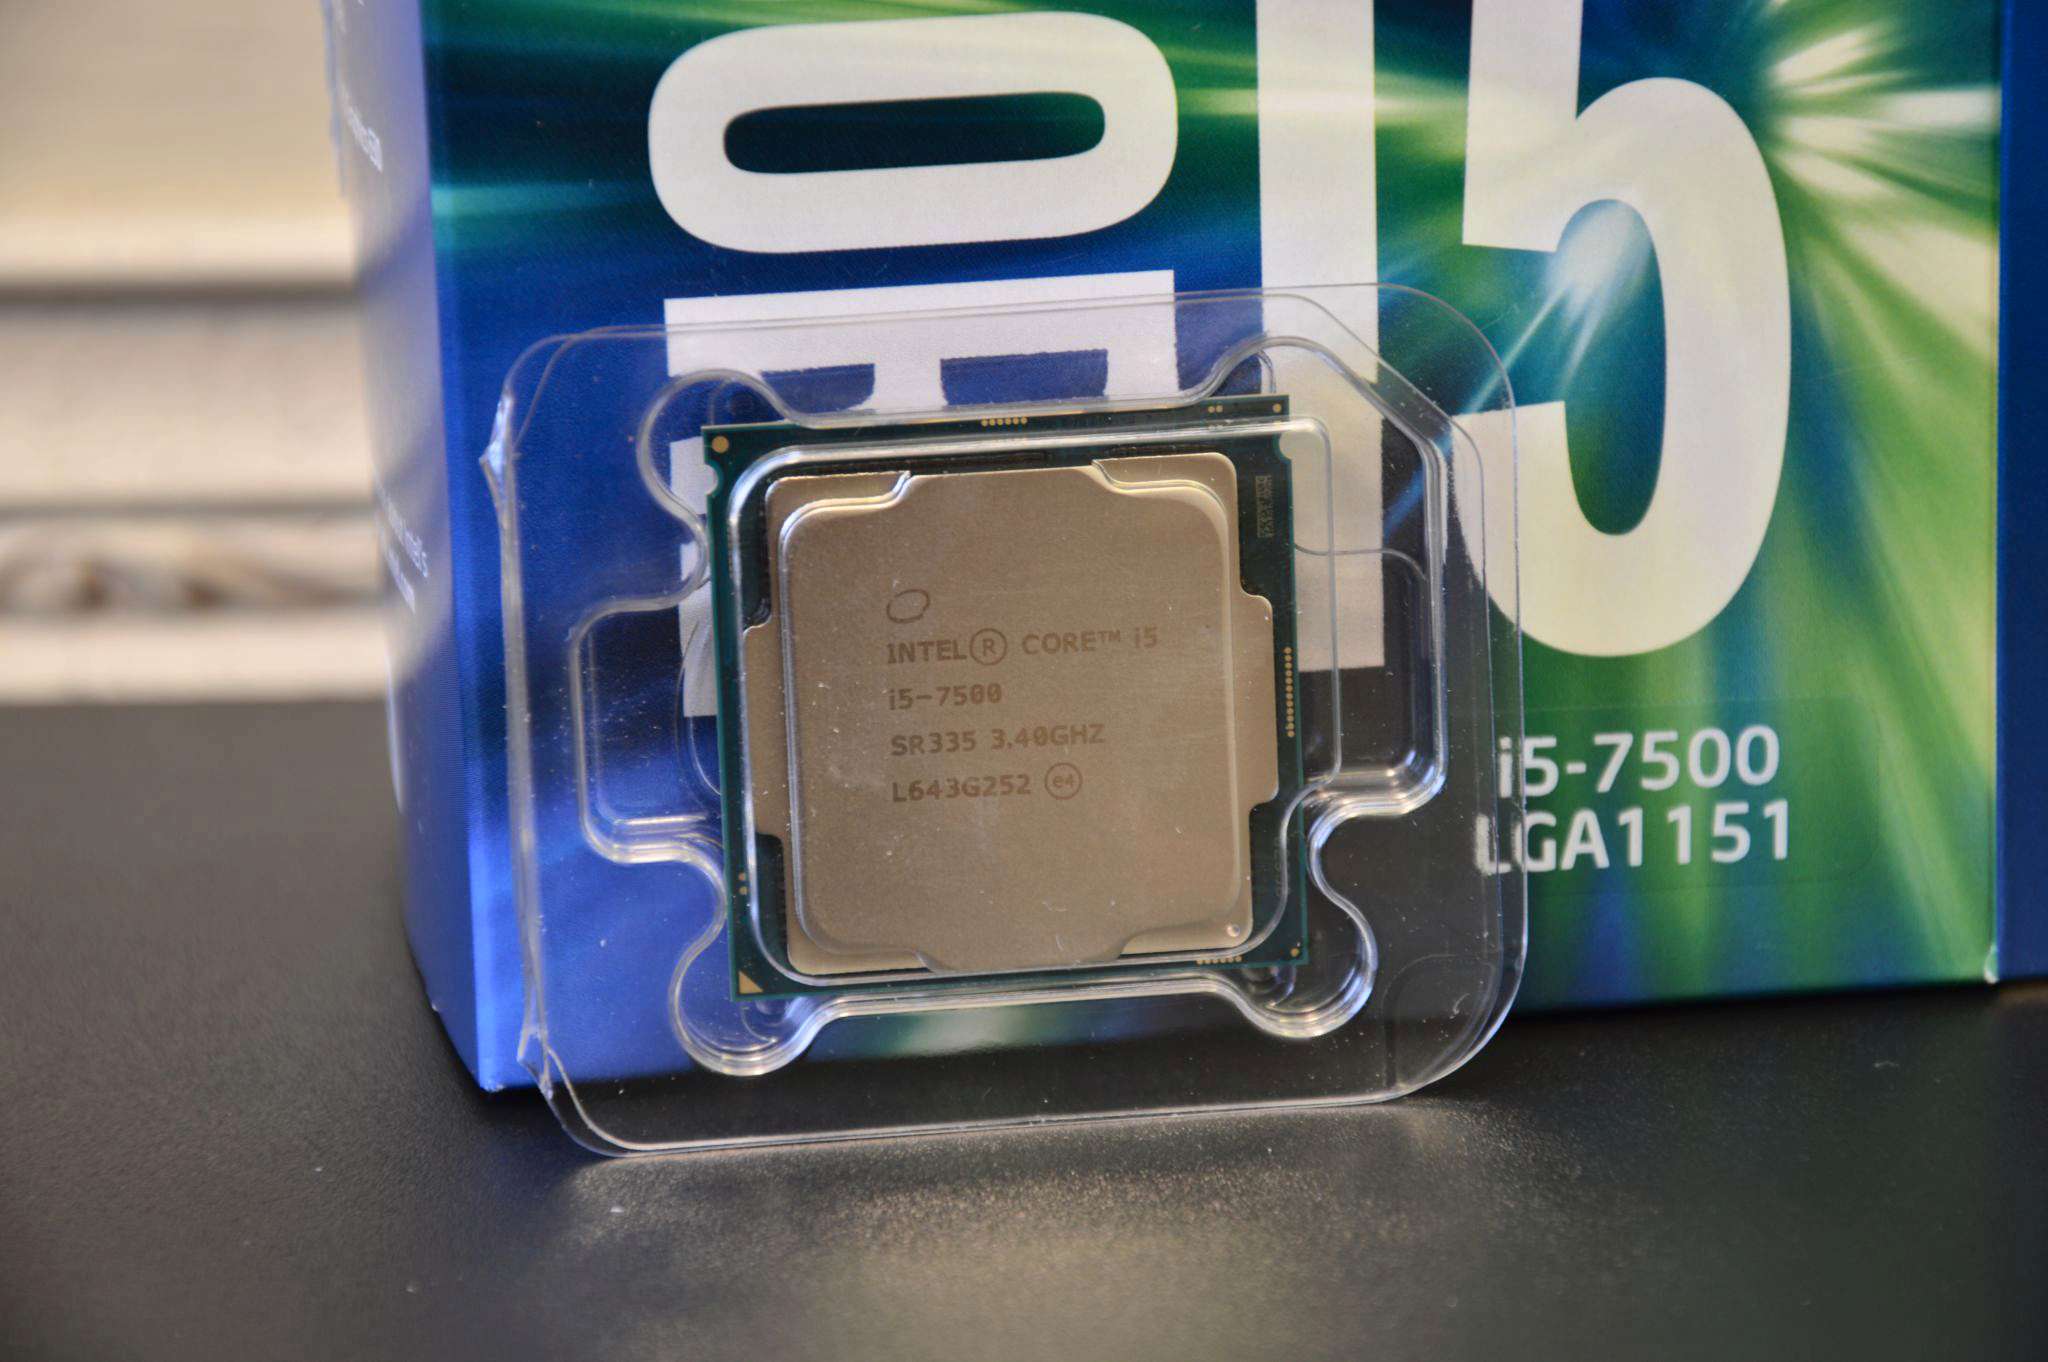 Intel r core tm купить. Intel i5 7500. Core i5 7500. Intel Core i5-7500 OEM. Intel(r) Core(TM) i5-7500 CPU @ 3.40GHZ 3.41 GHZ.